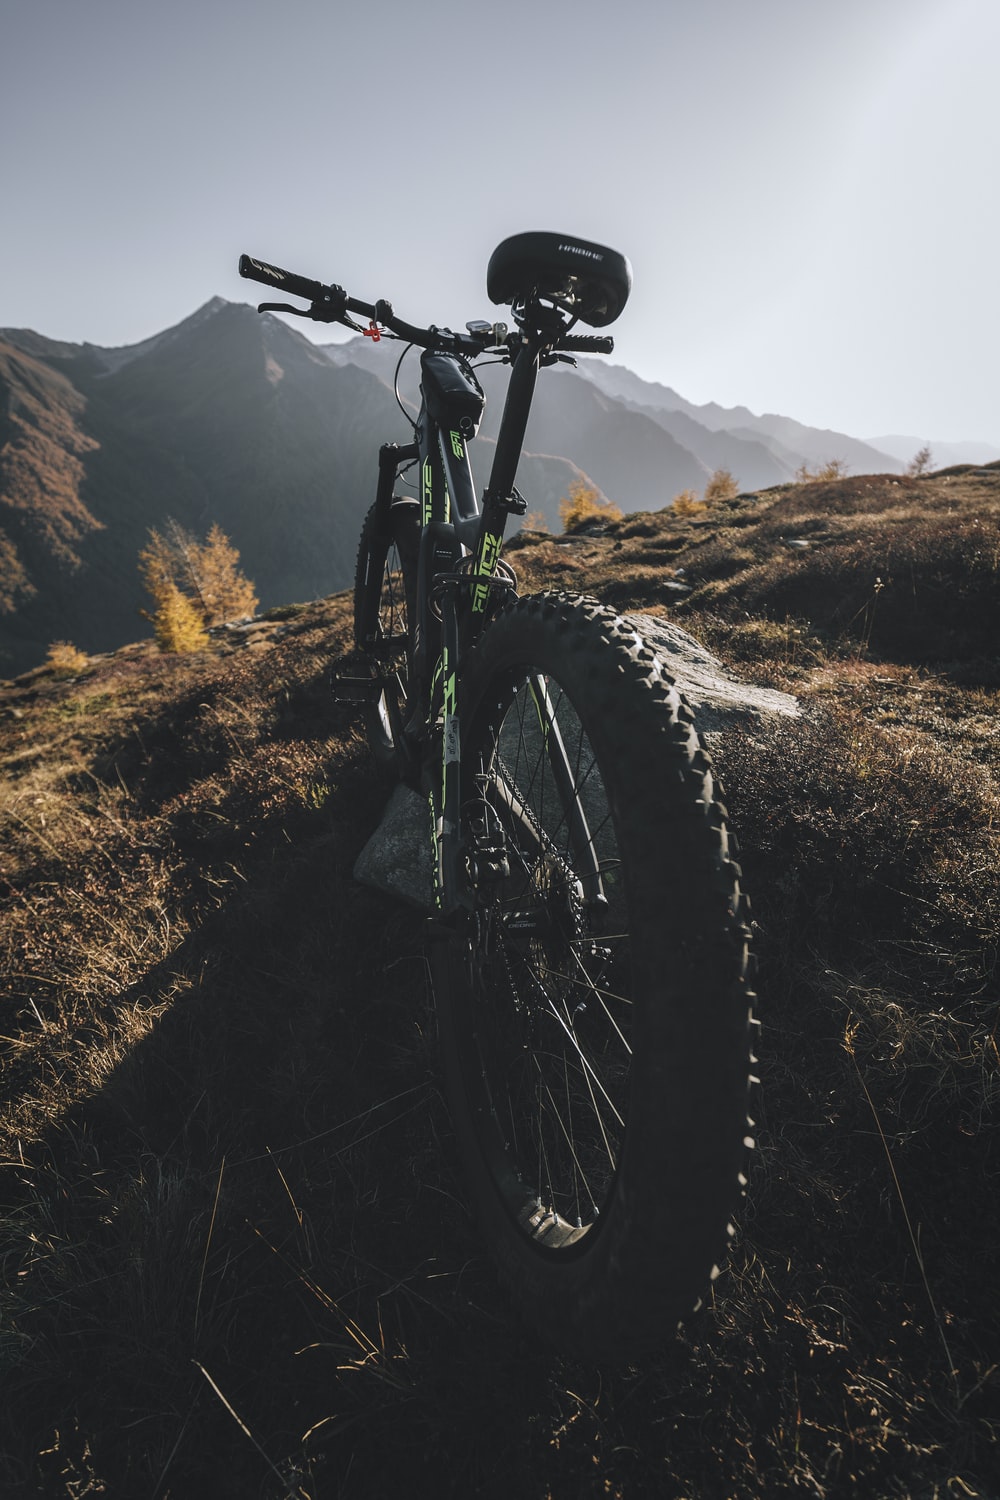 Mountain Bike Wallpaper Images  Free Download on Freepik